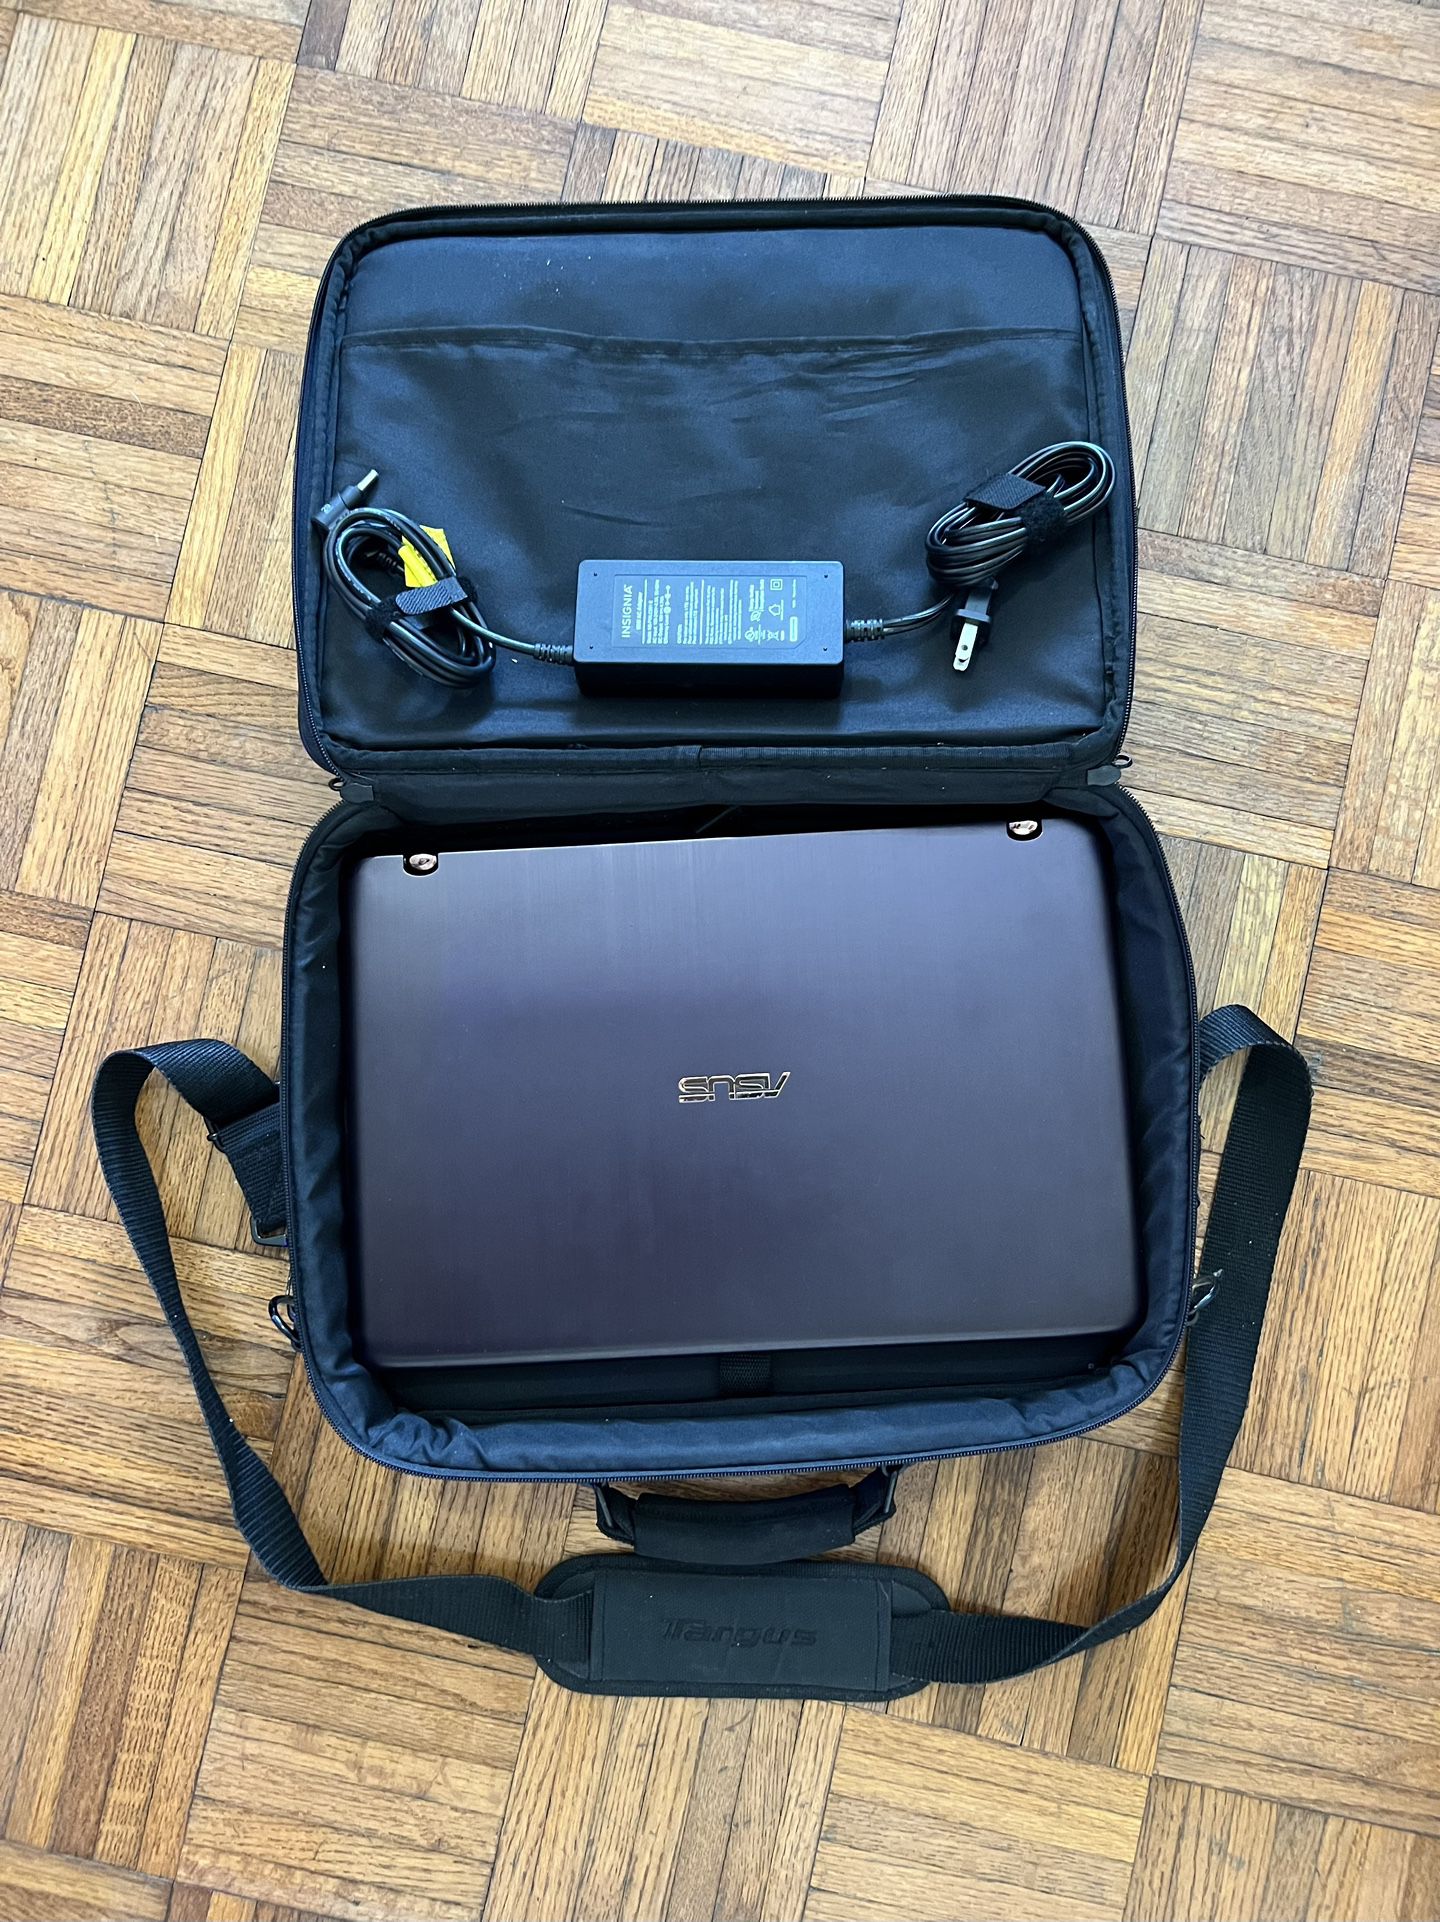 Asus Gaming Tablet Laptop & Targus Laptop Bag